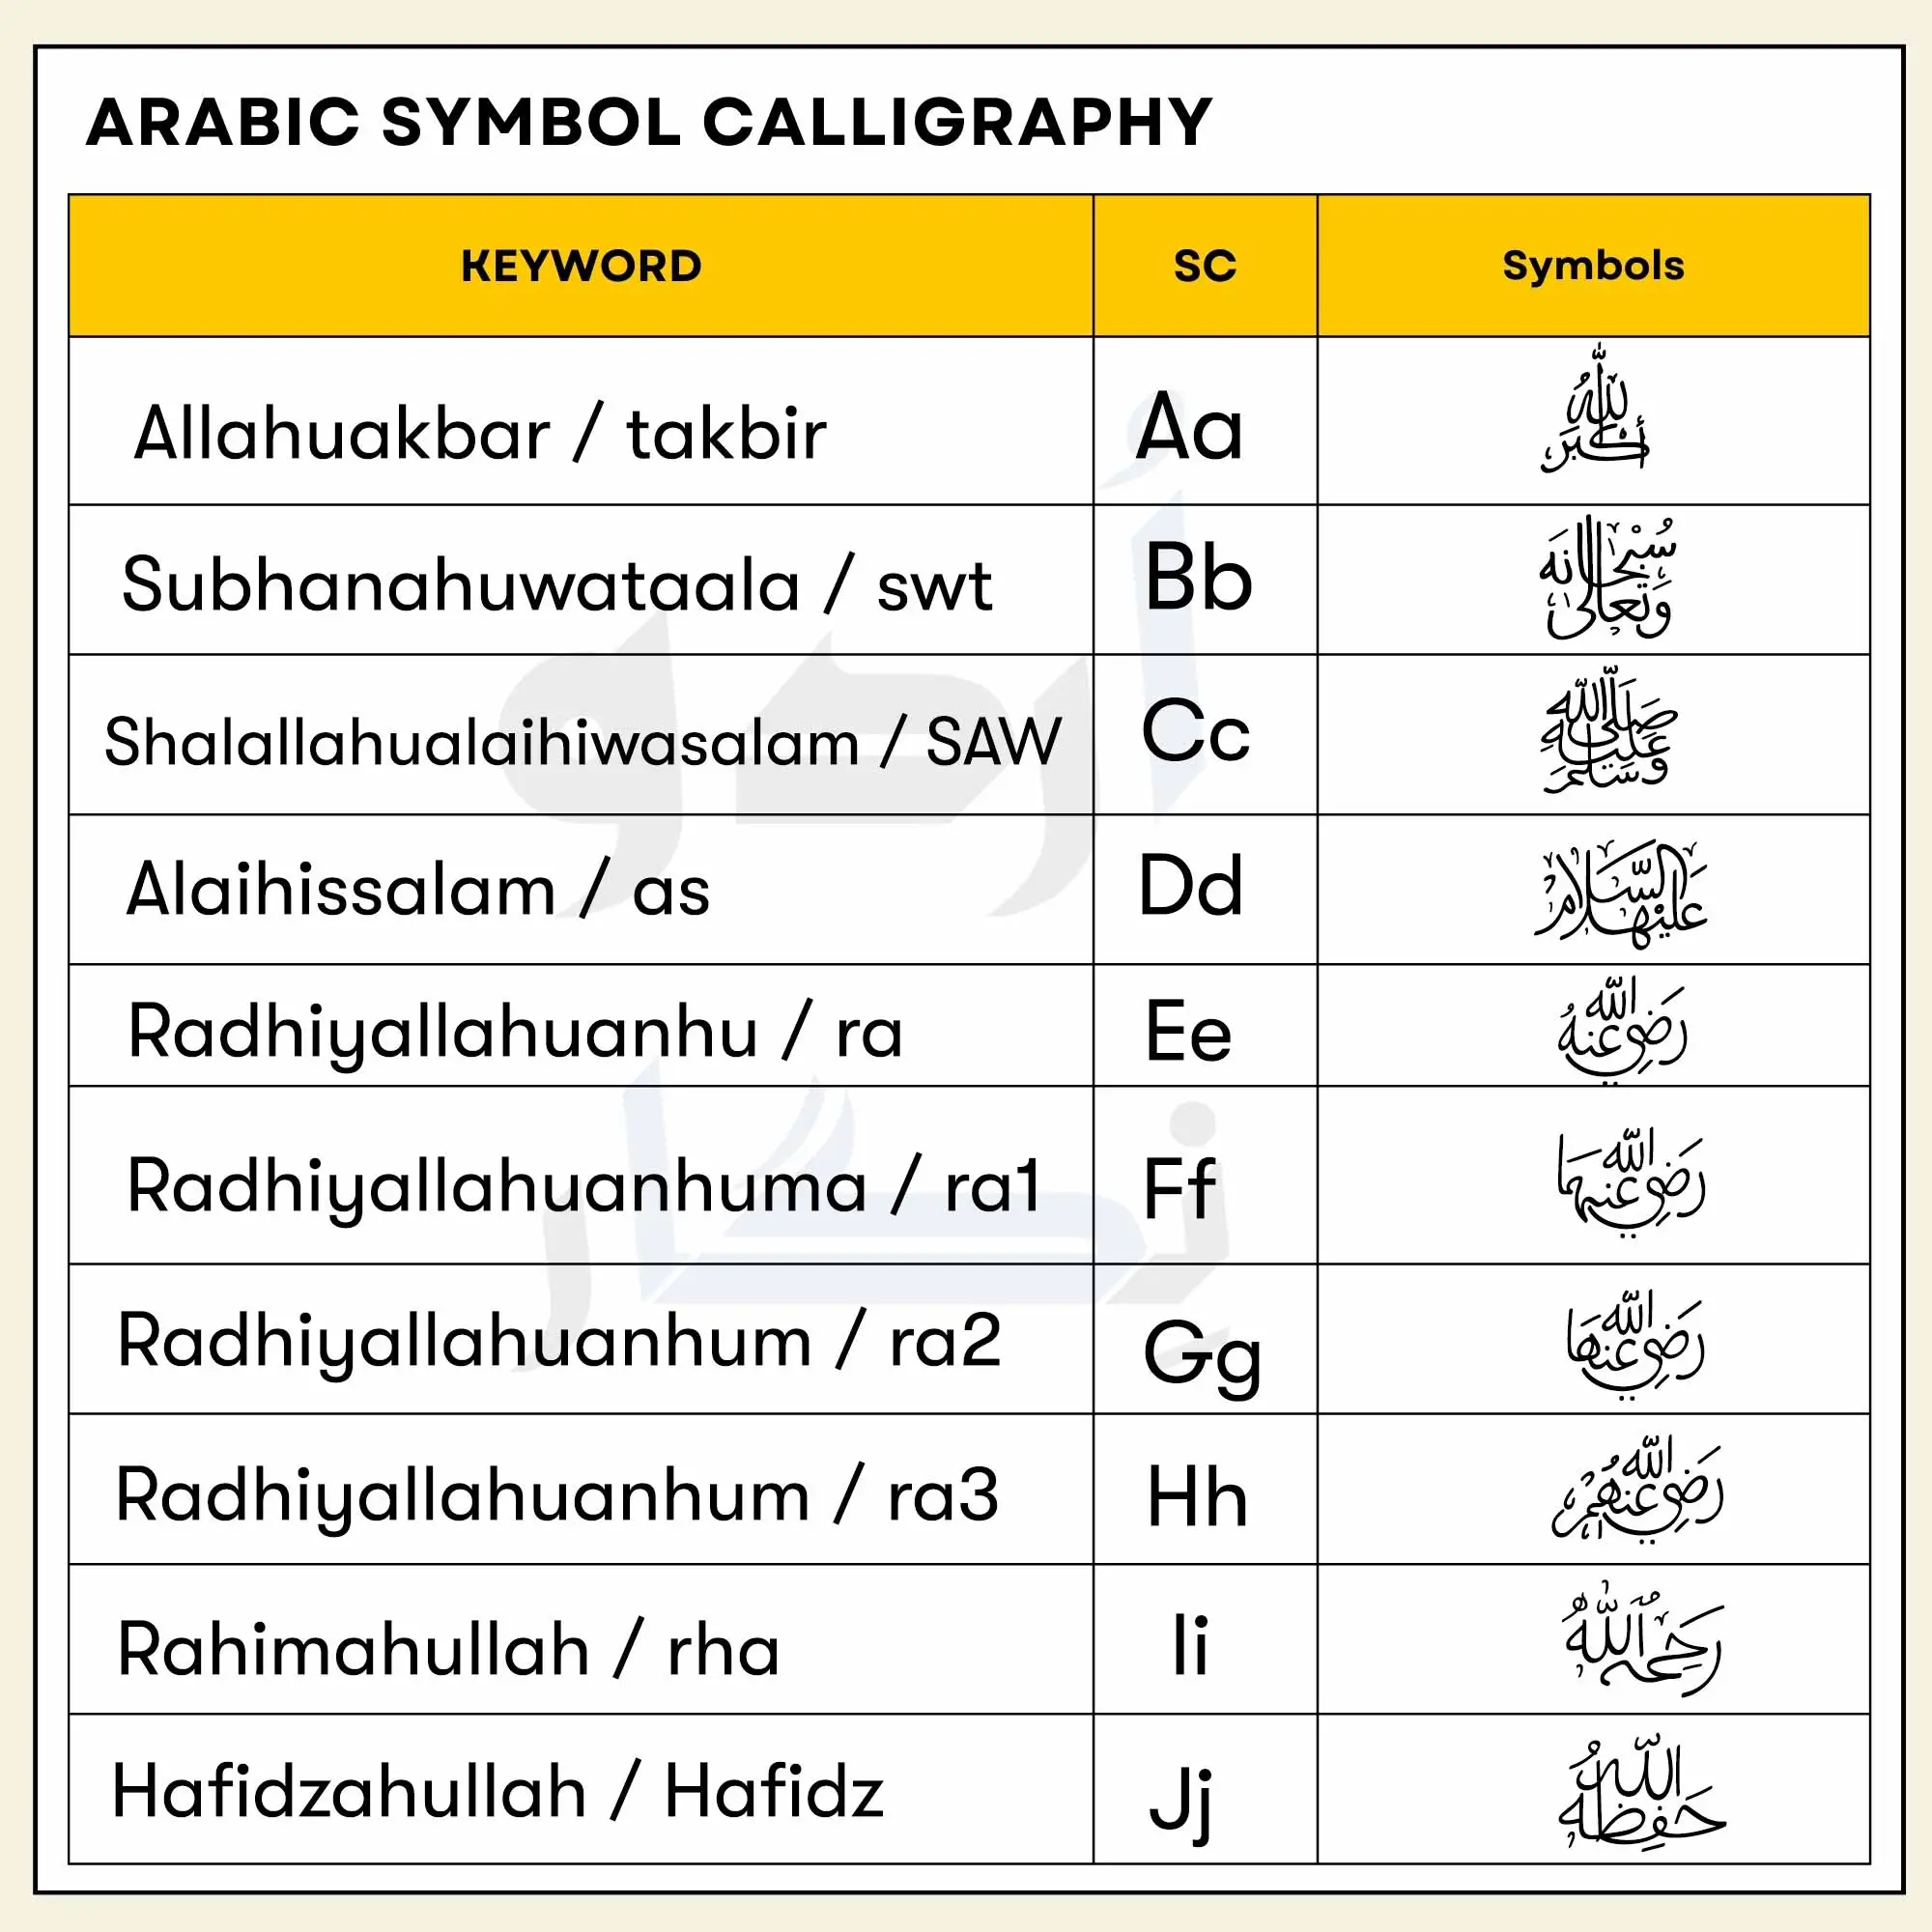 Arabic Symbol Calligraphy Font top 10 symbols